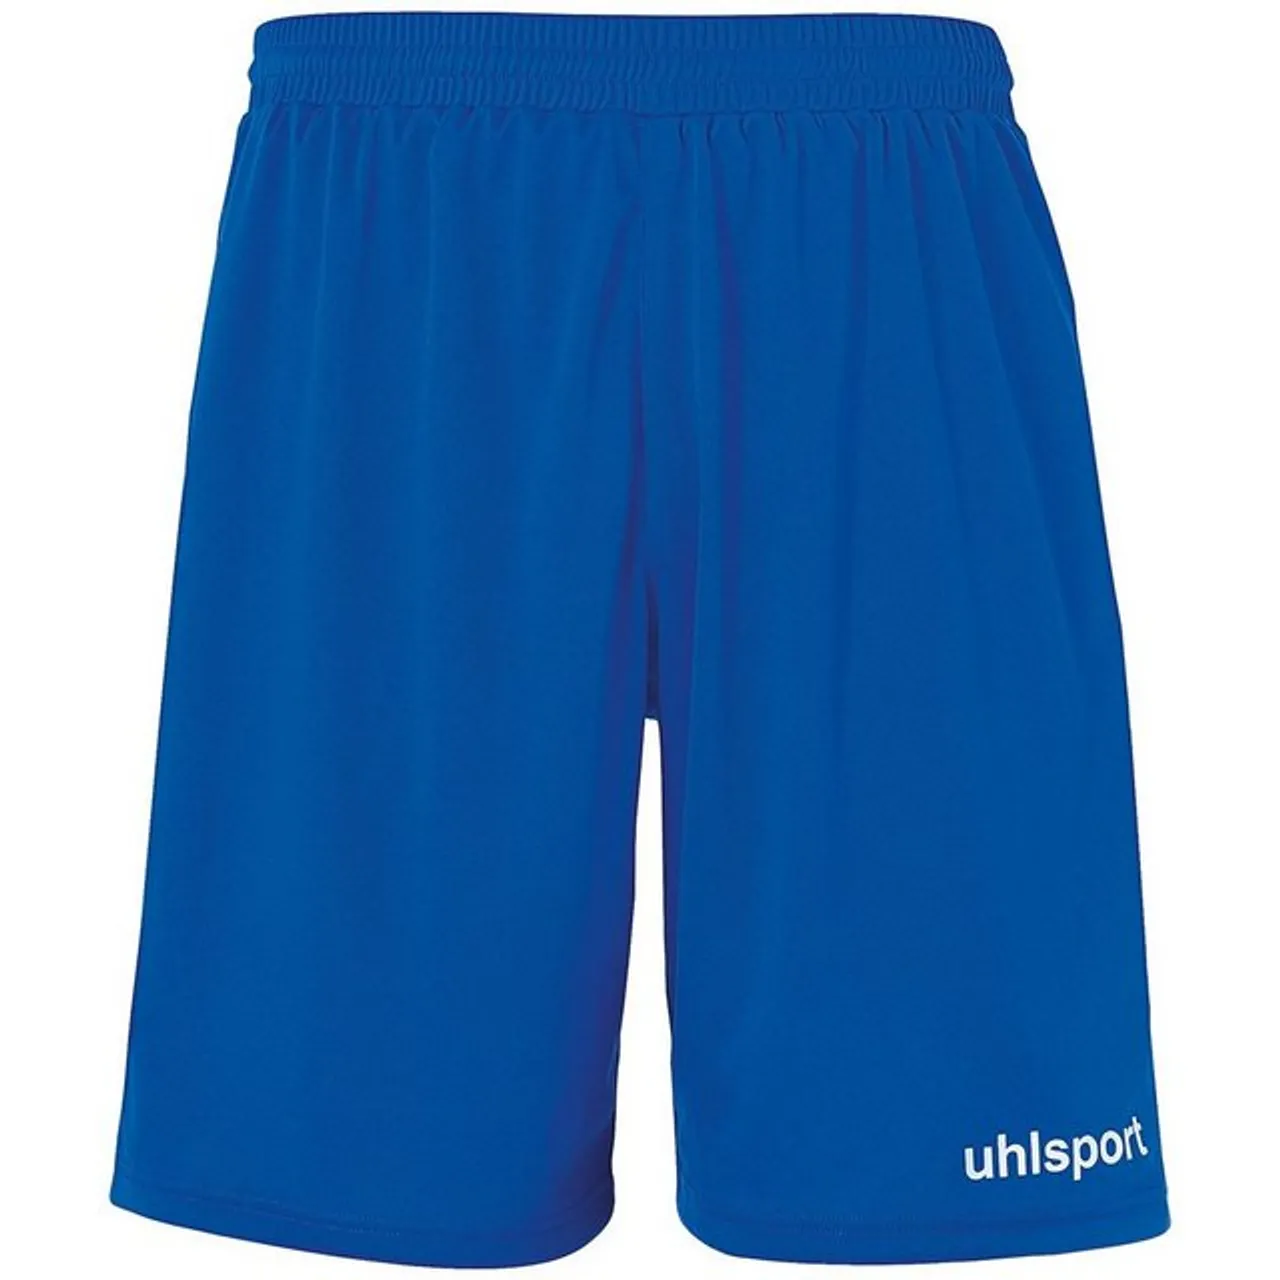 uhlsport Shorts Shorts PERFORMANCE SHORTS